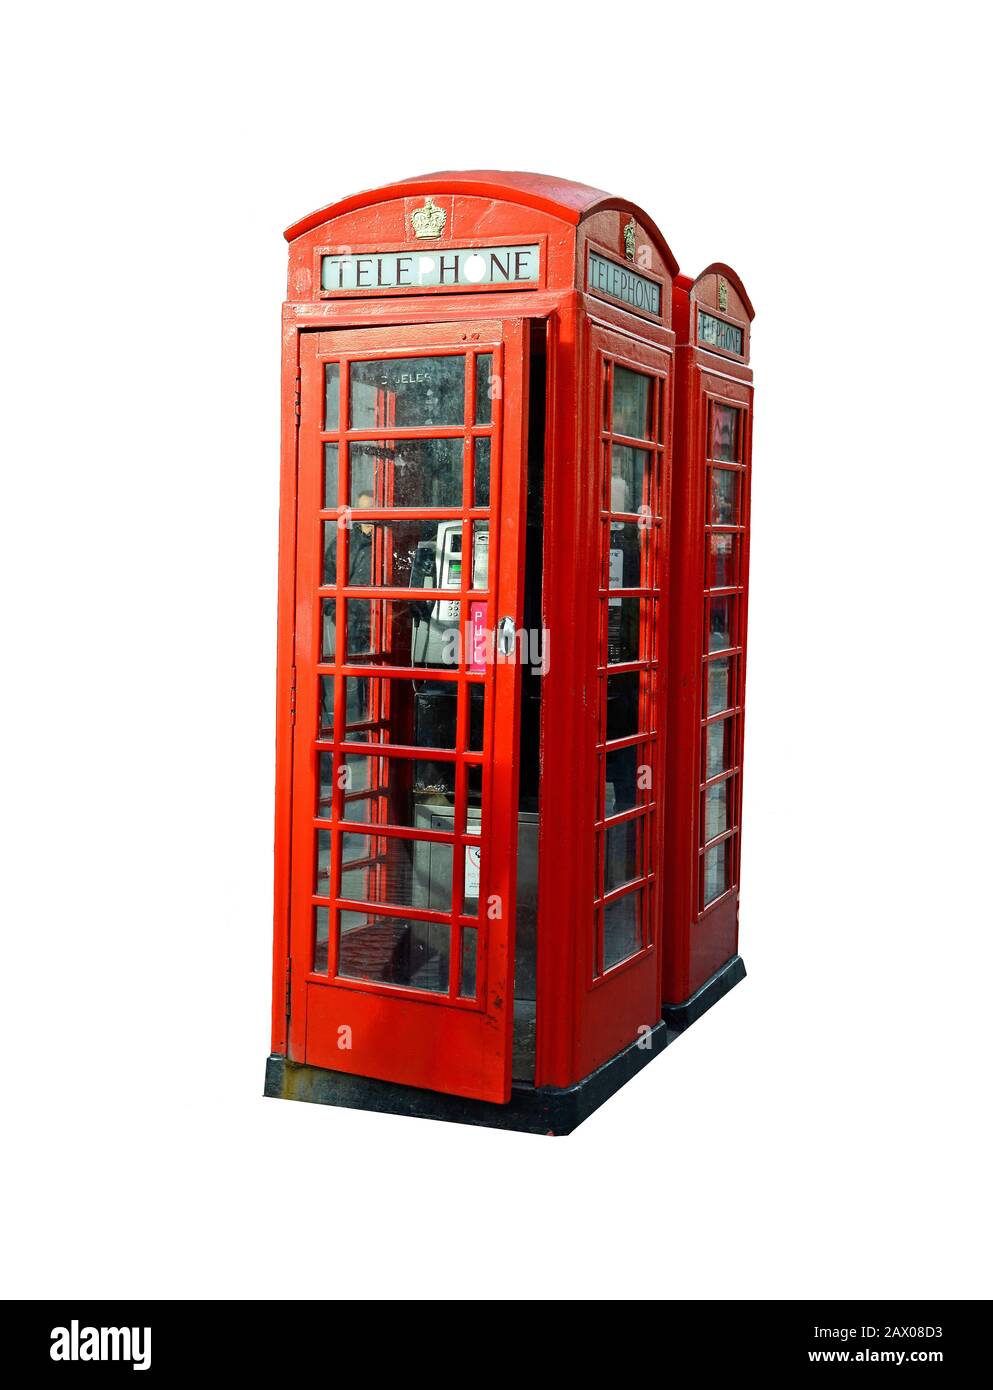 Londres, Royaume-Uni - 15 janvier 2016 : téléphone public traditionnel Banque D'Images